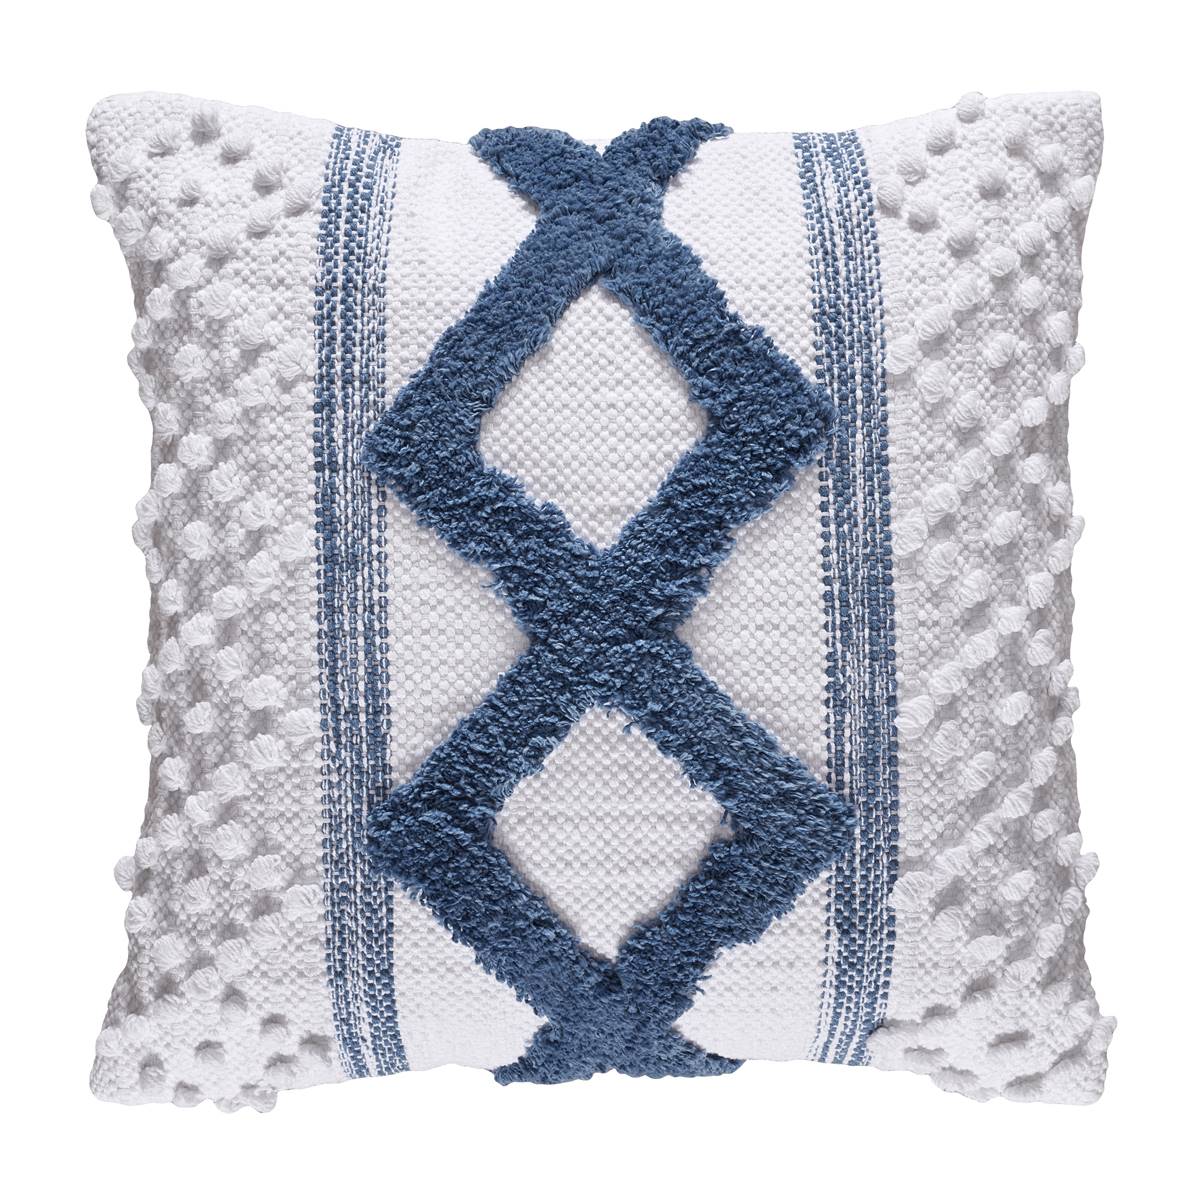 White Sand Serenity Decorative Throw Pillow - 18x18